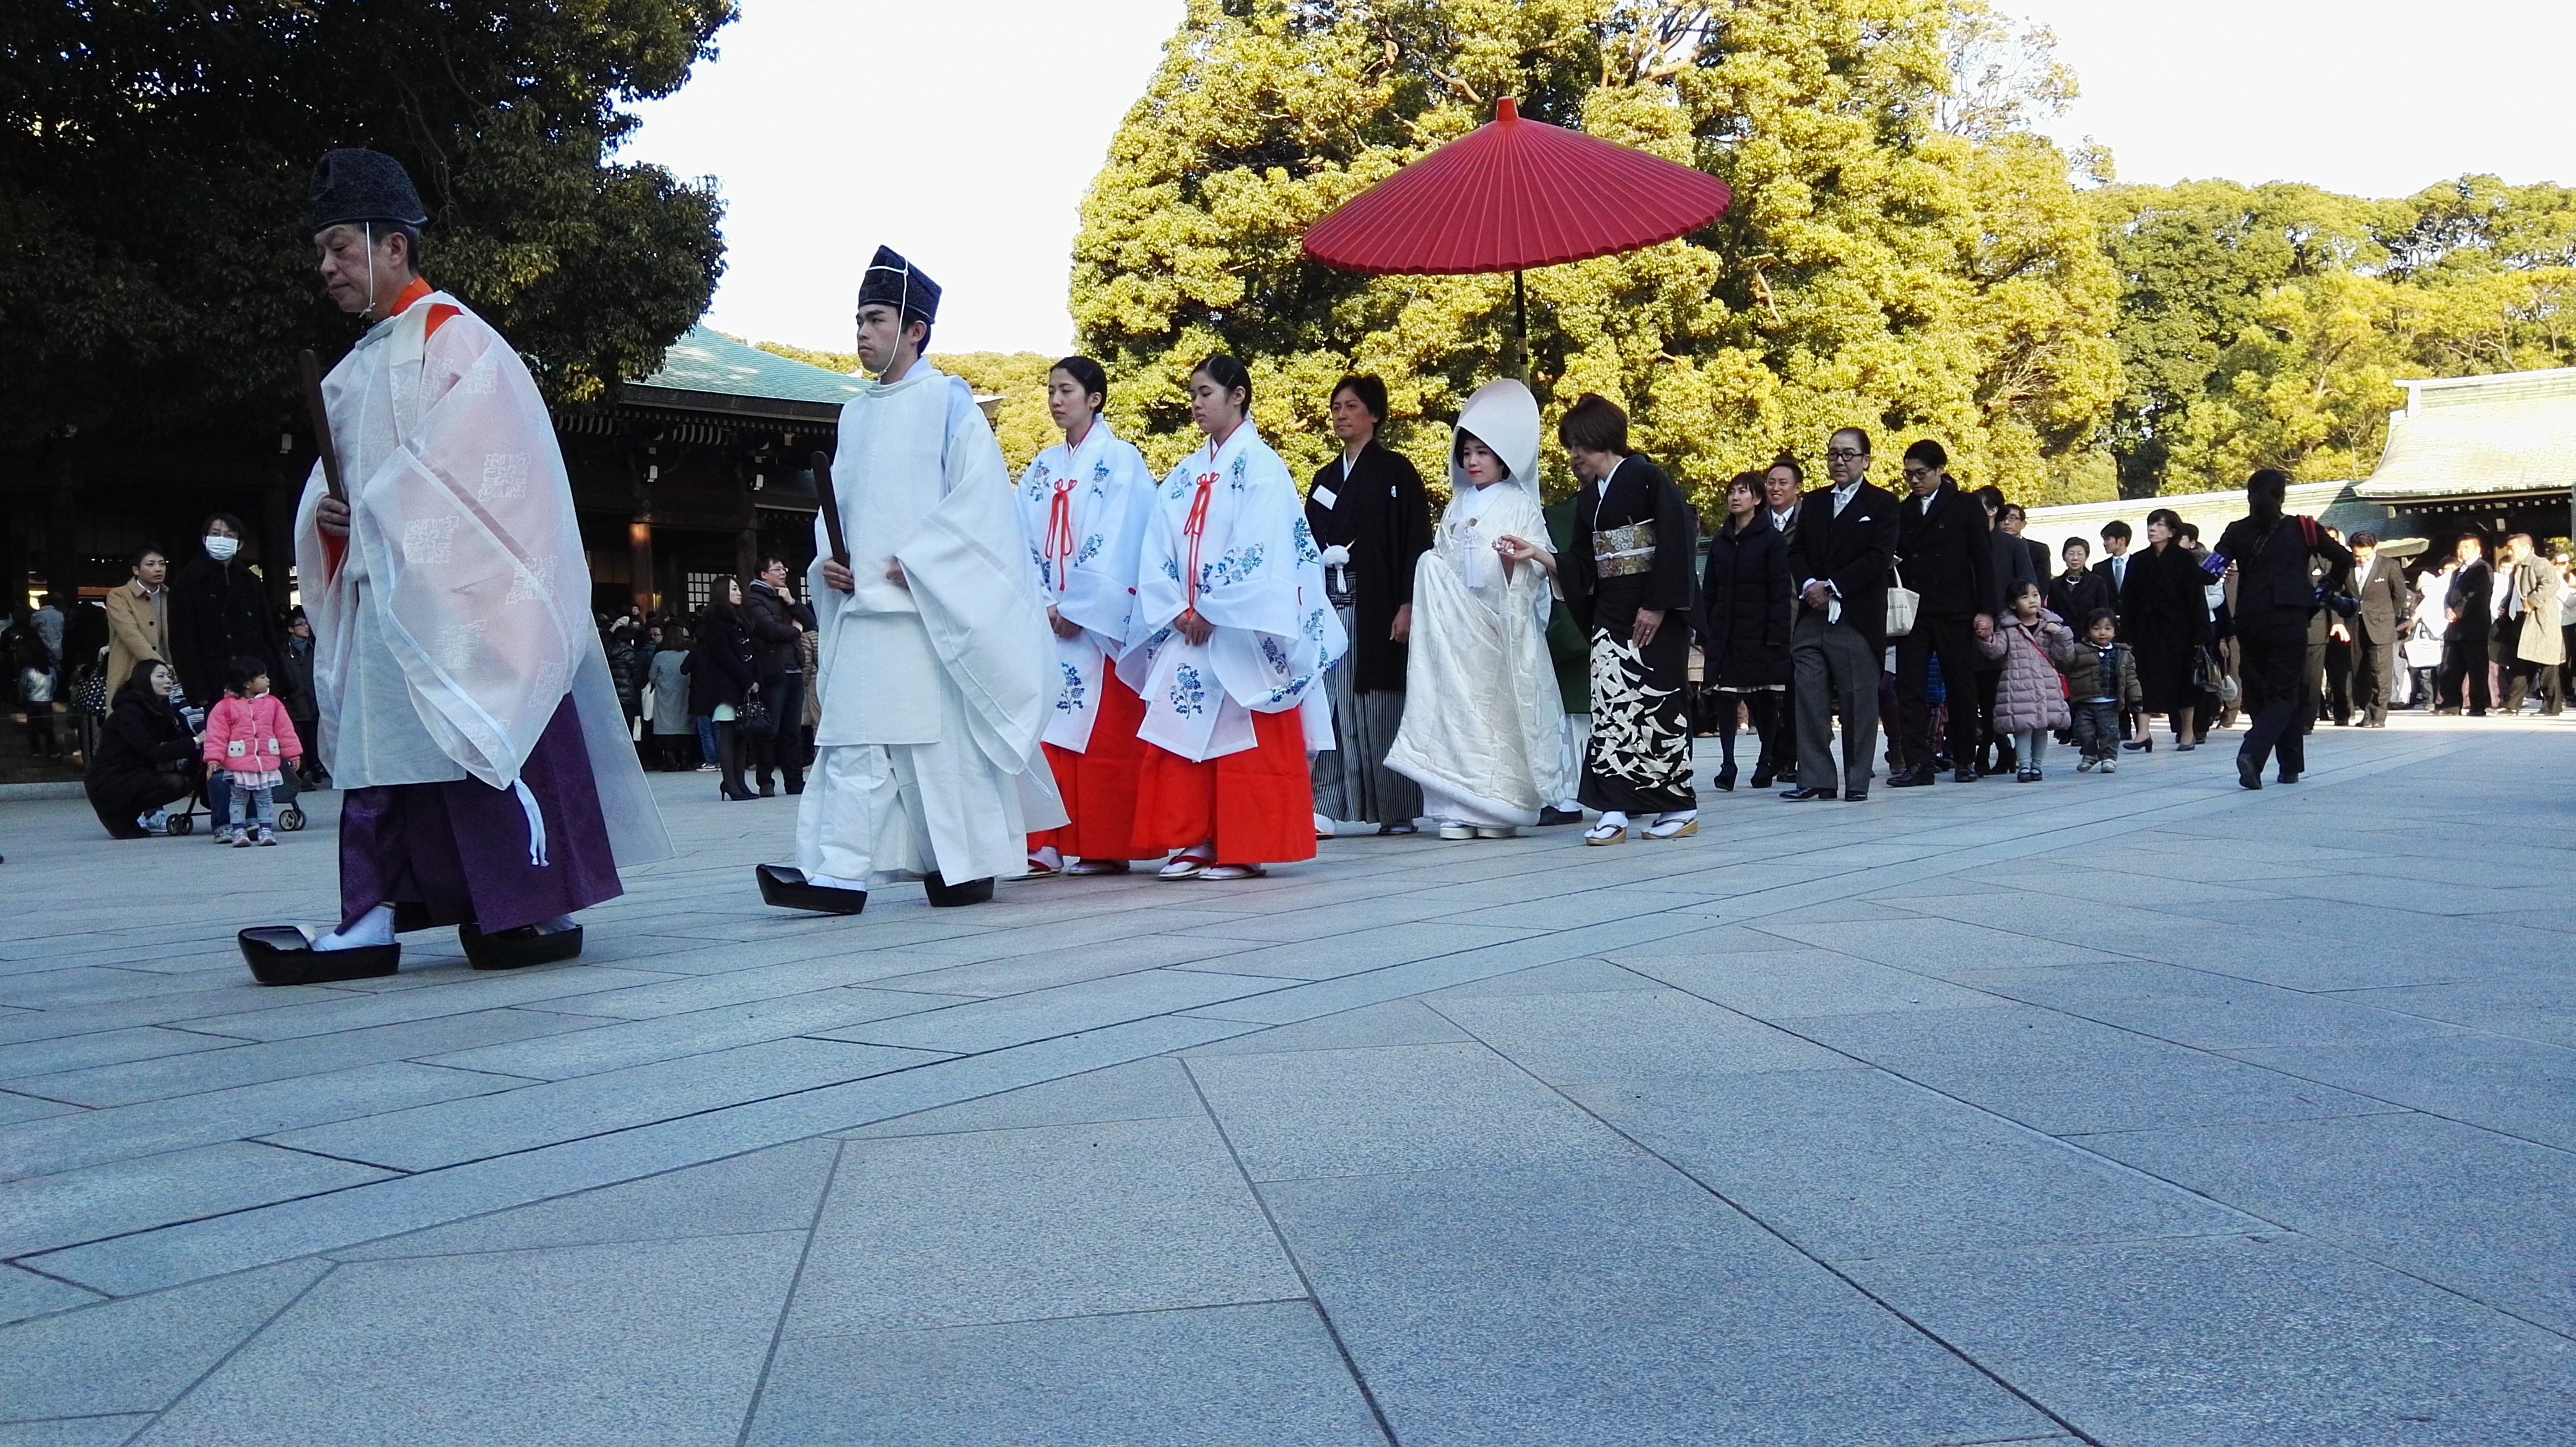 Przypadkiem trafiłem na tradycyjny ślub, który odbywał się w parku Yoyogi.